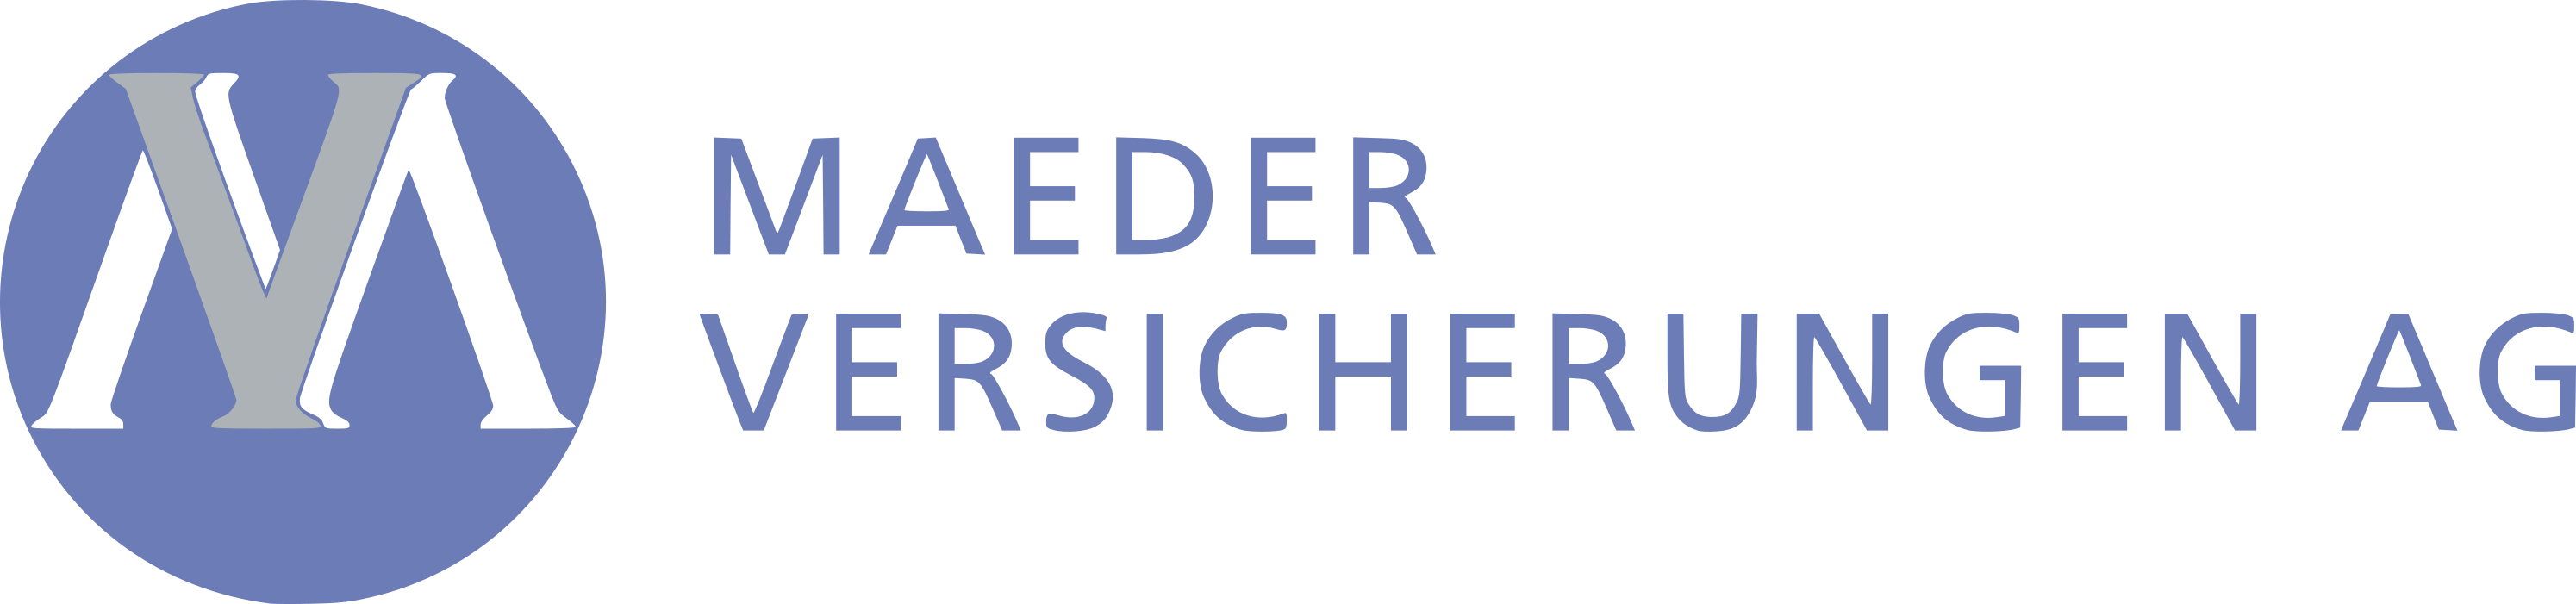 Maeder Versicherungen AG